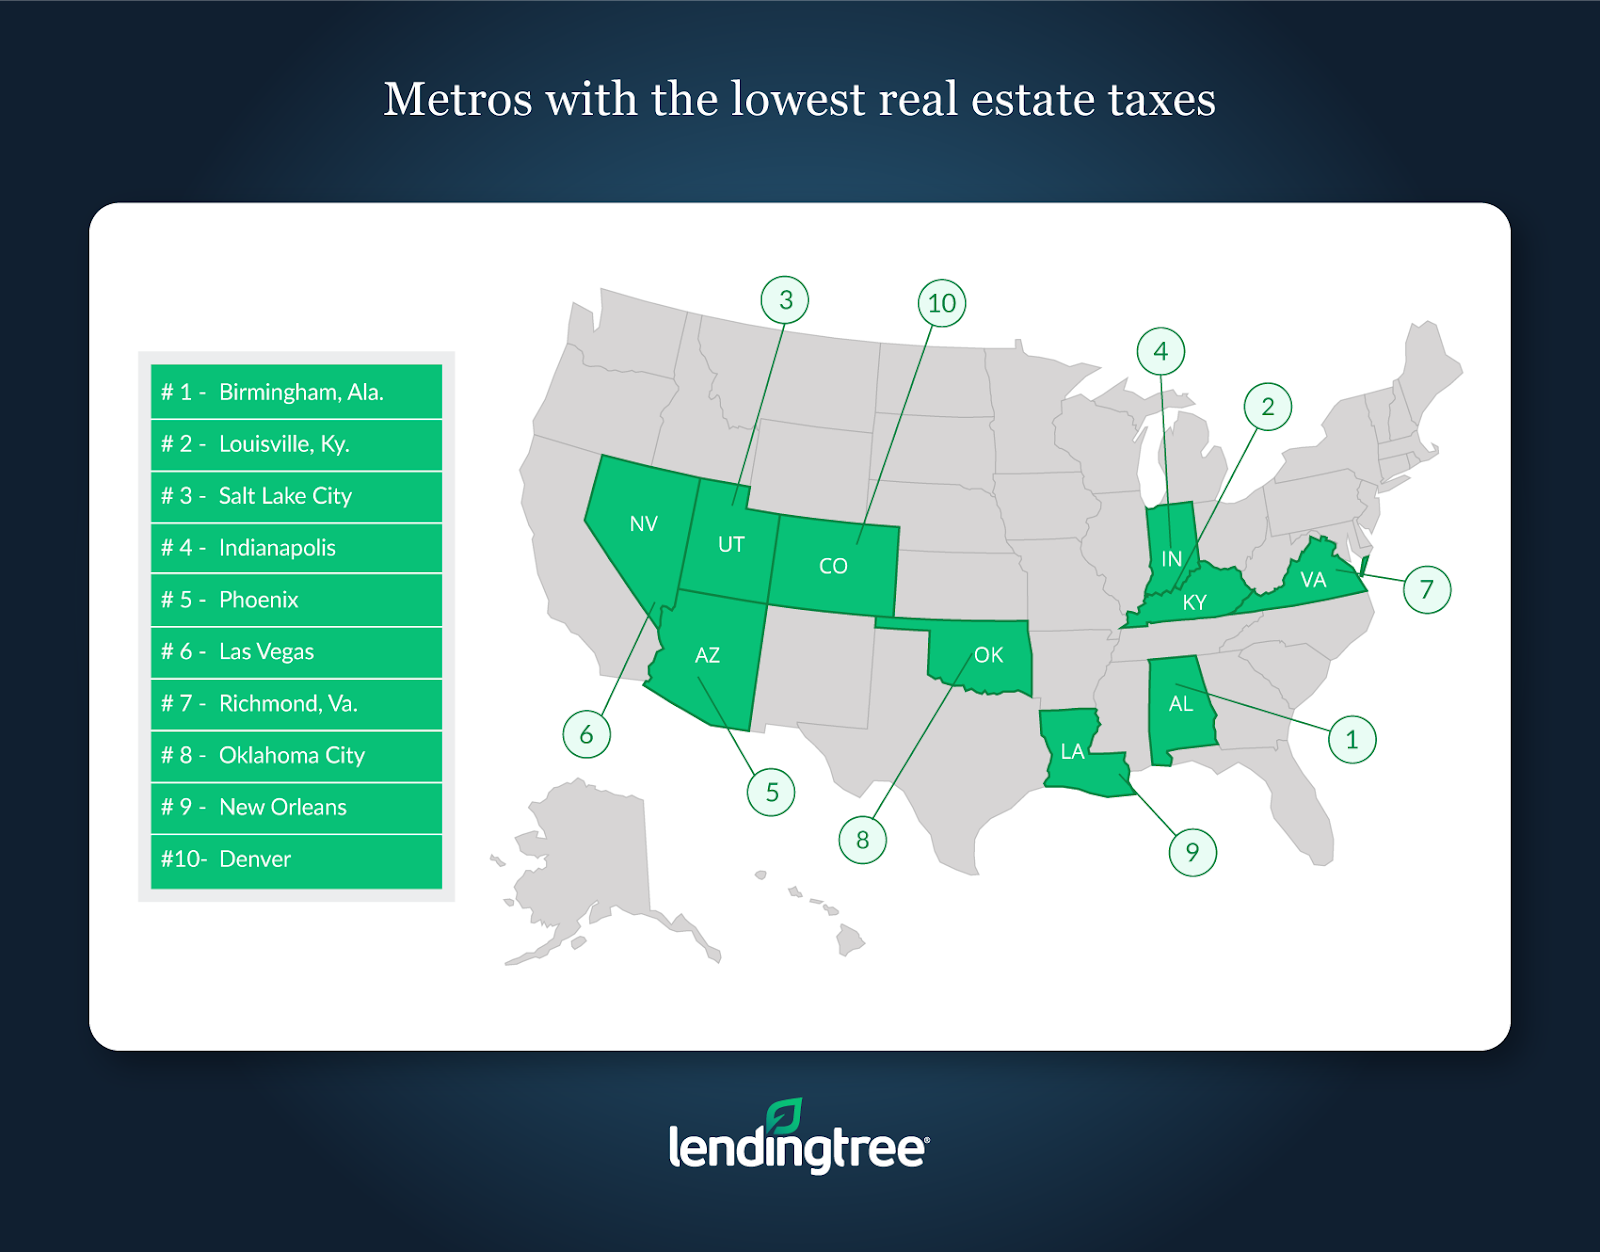 Lending Tree: Real estate taxes